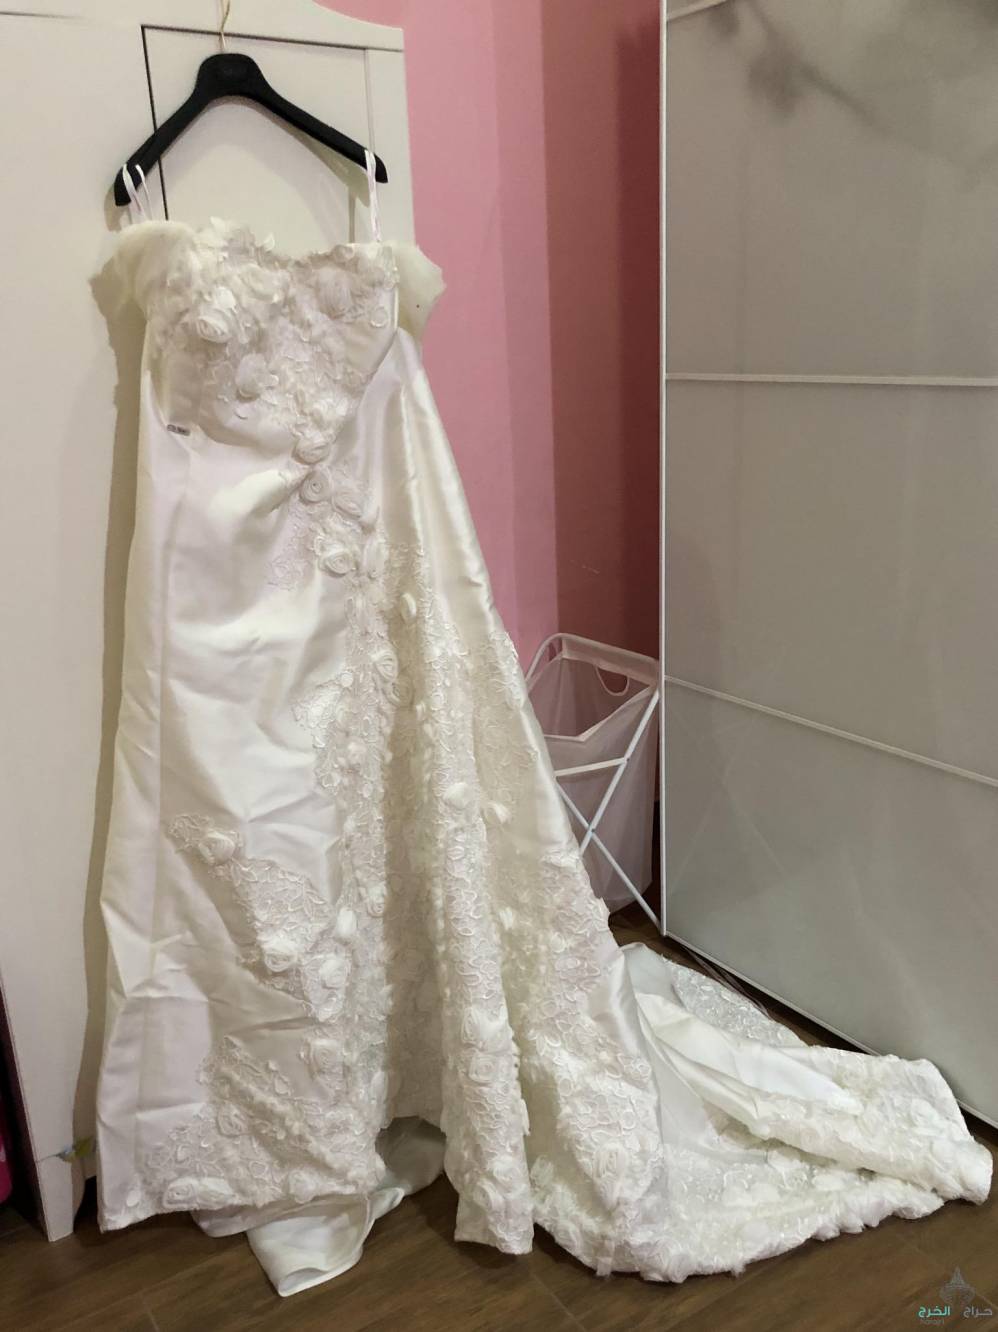 فستان زواج جديد من محل رهيد ( لم يلبس )